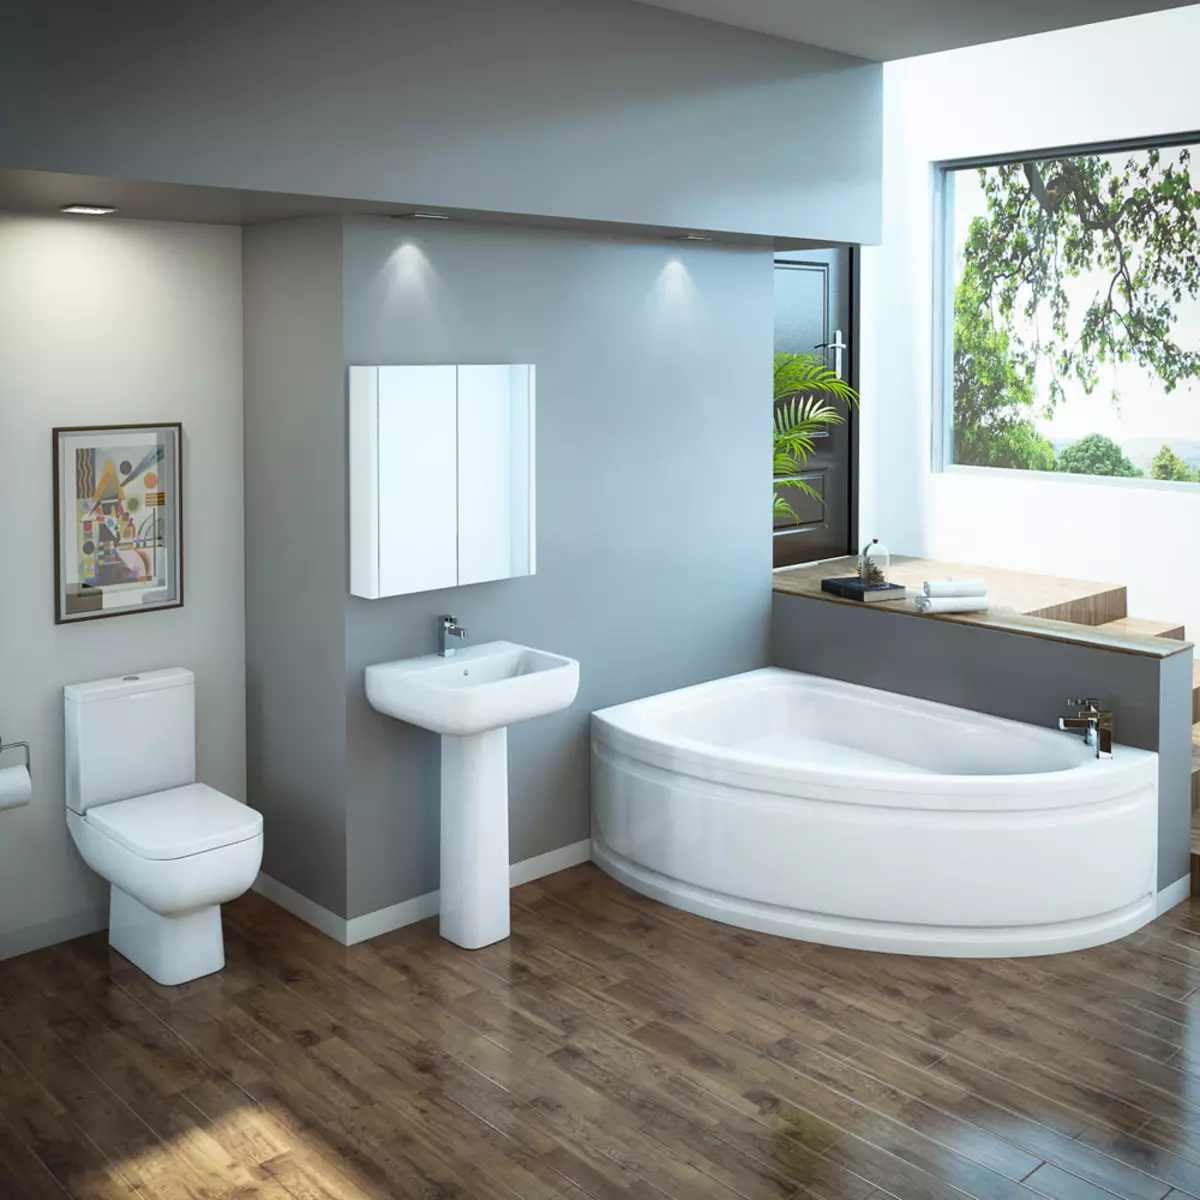 Hjørne badeværelser på badeværelset (79 billeder): Interiørdesign muligheder med hjørne badeværelse, smukke ideer 10233_4